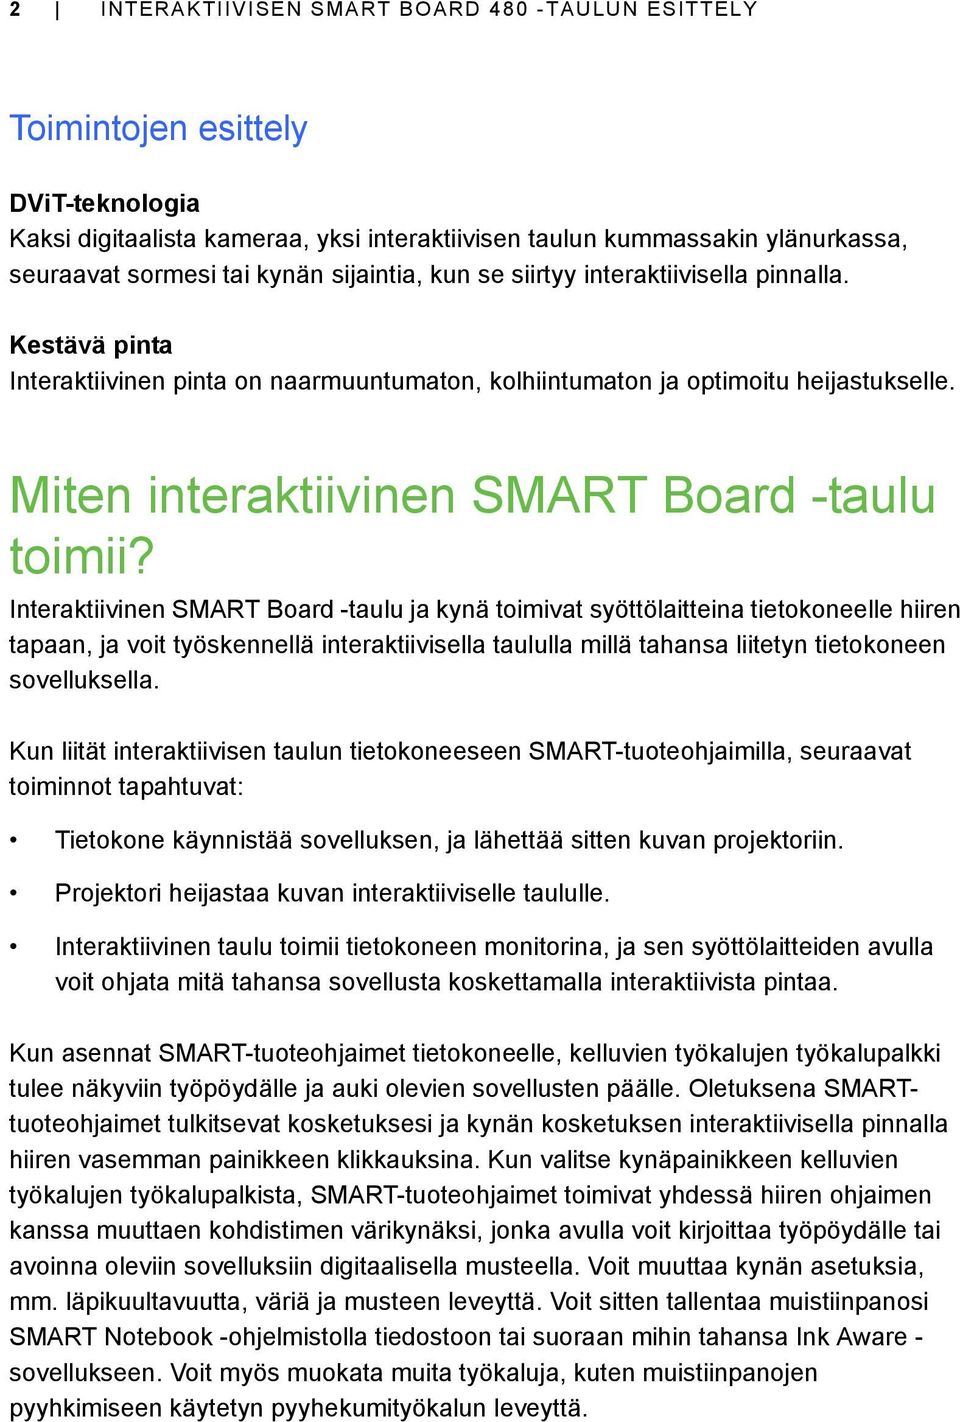 Miten interaktiivinen SMART Board -taulu toimii?